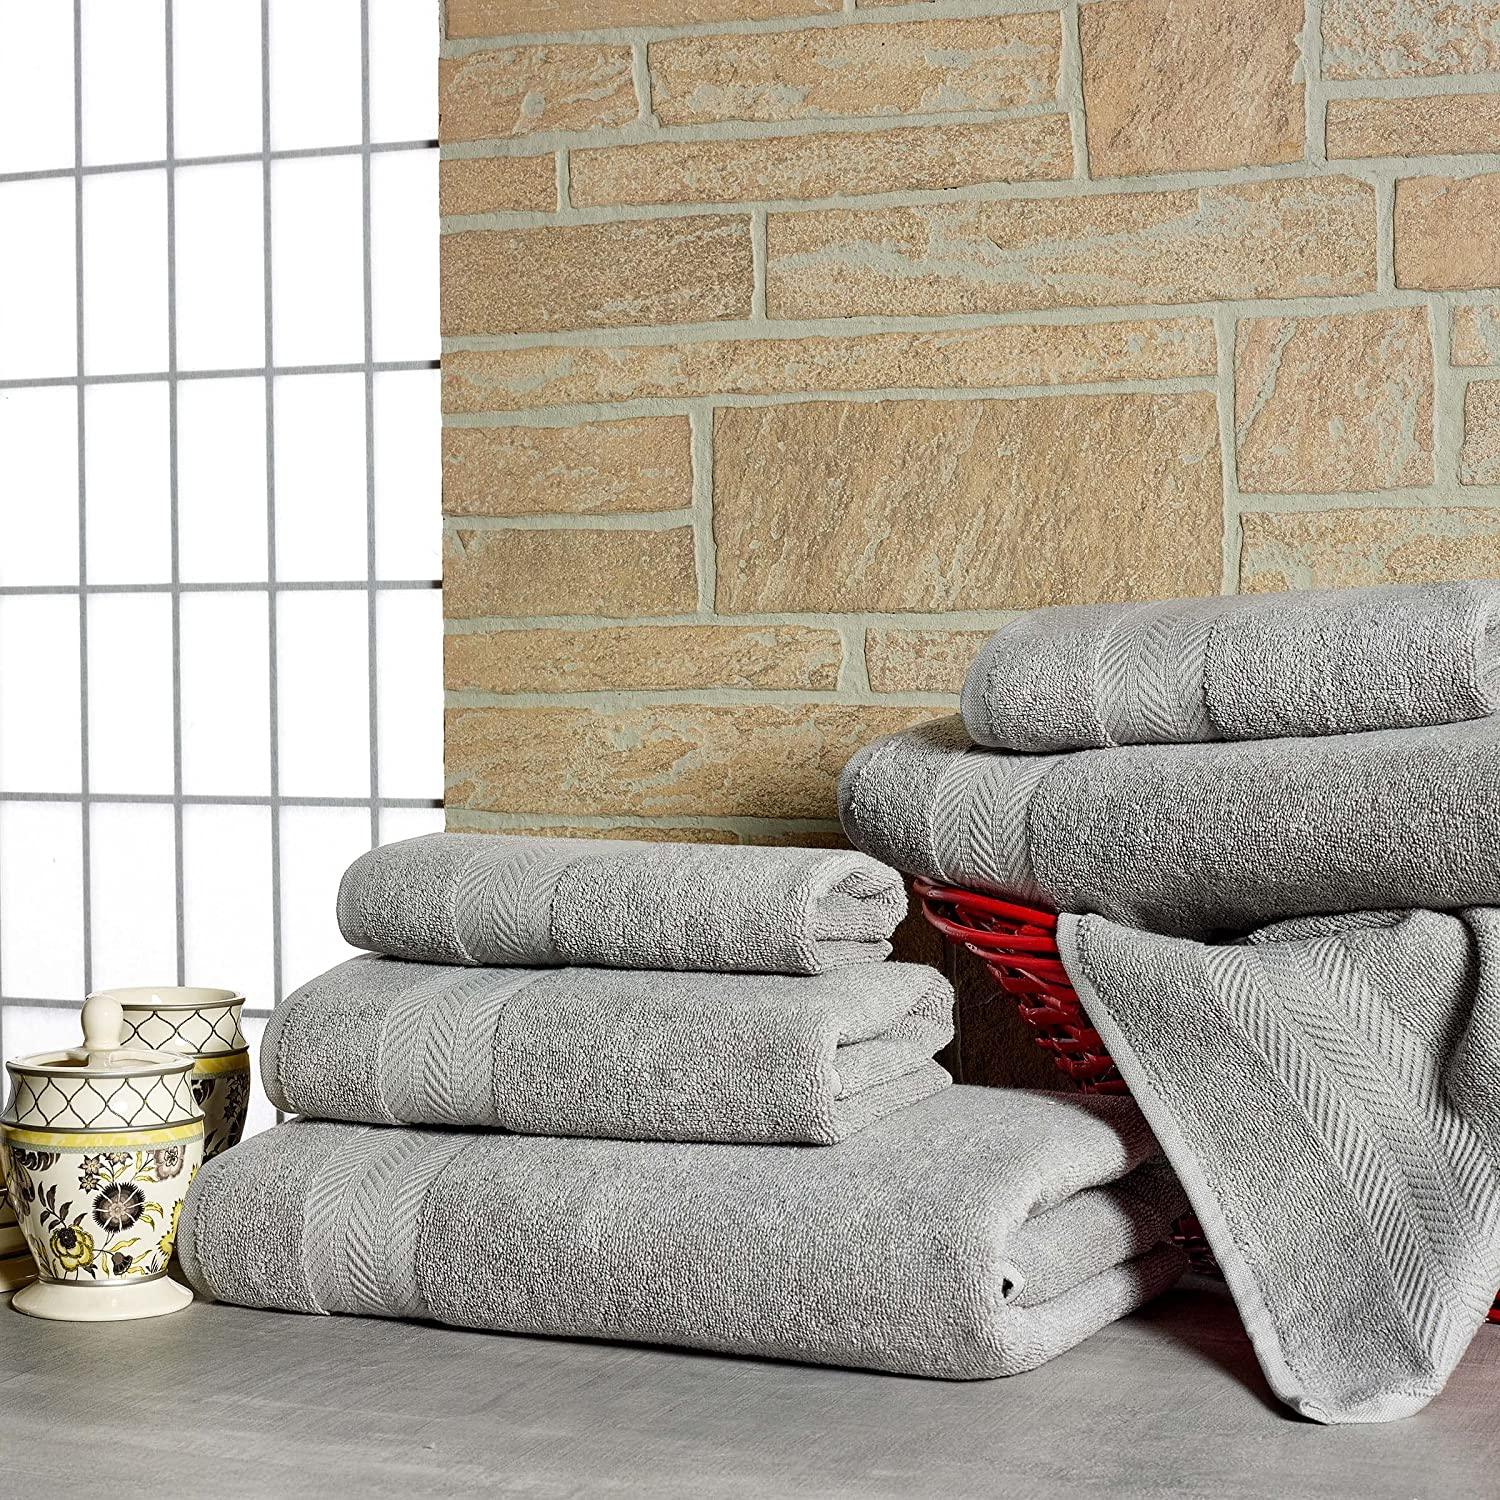 Bedsure Bath Towels Sets for Bathroom - Grey Bath Towel Sets, 100